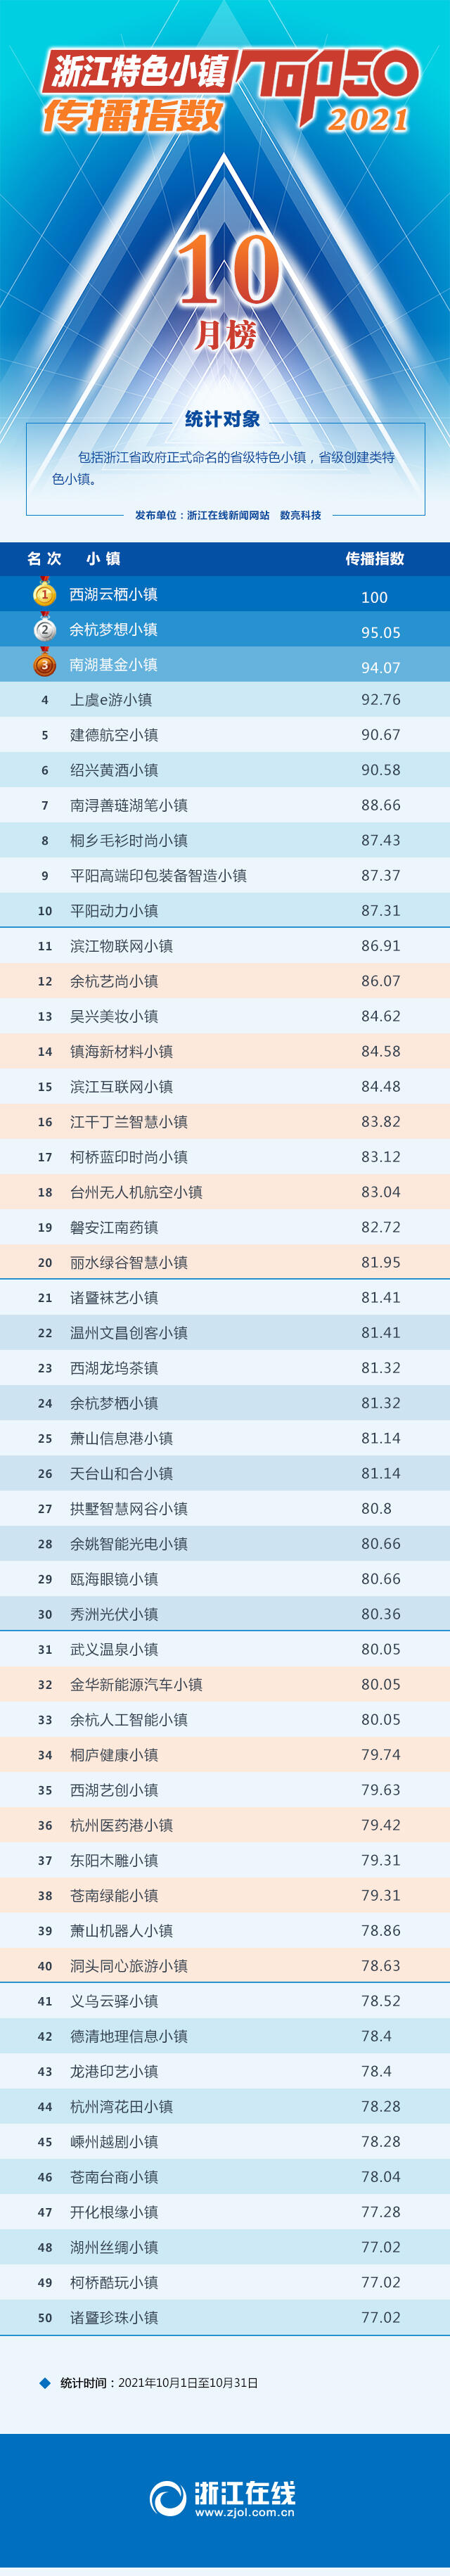 浙江特色小镇10月传播指数榜发布 看小镇如何助力共同富裕